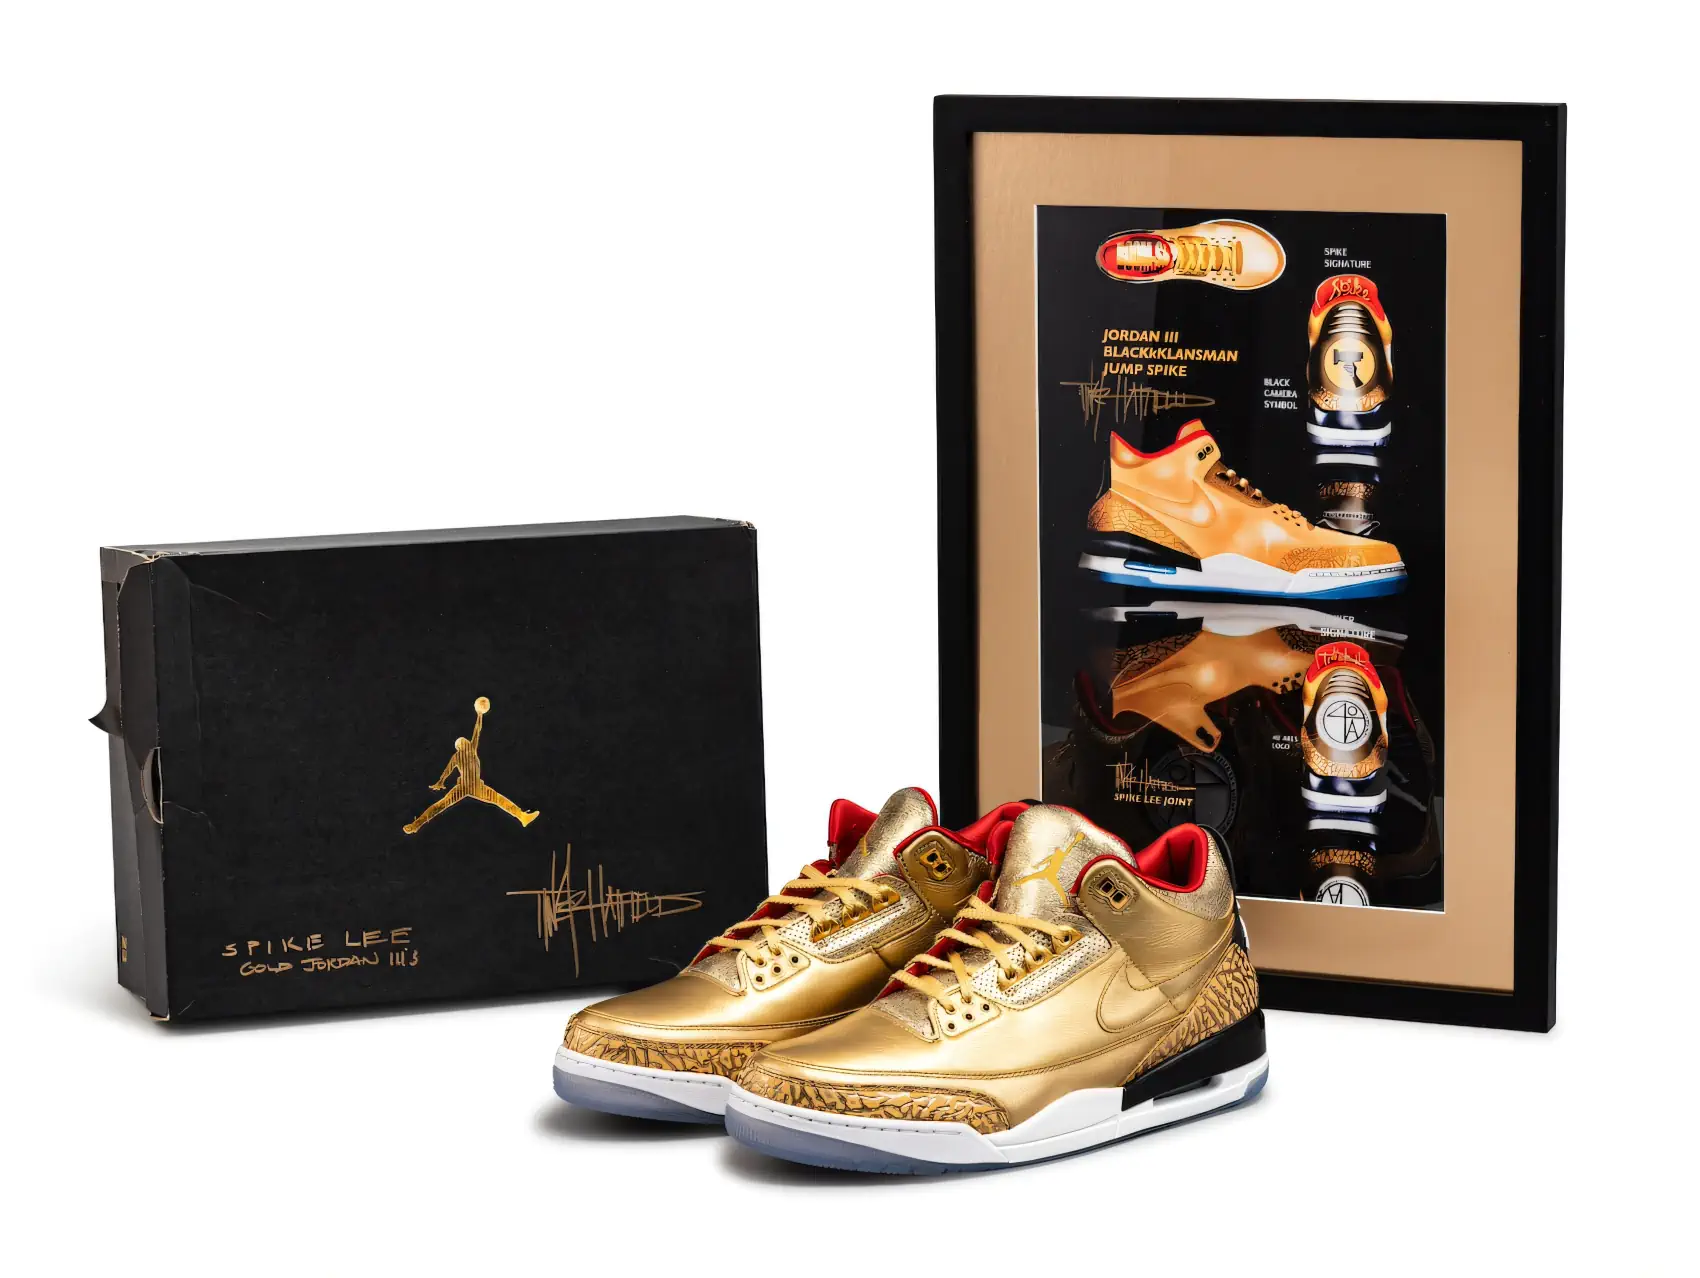 L'Air Jordan 3 Gold Oscars de Spike Lee mis aux enchères